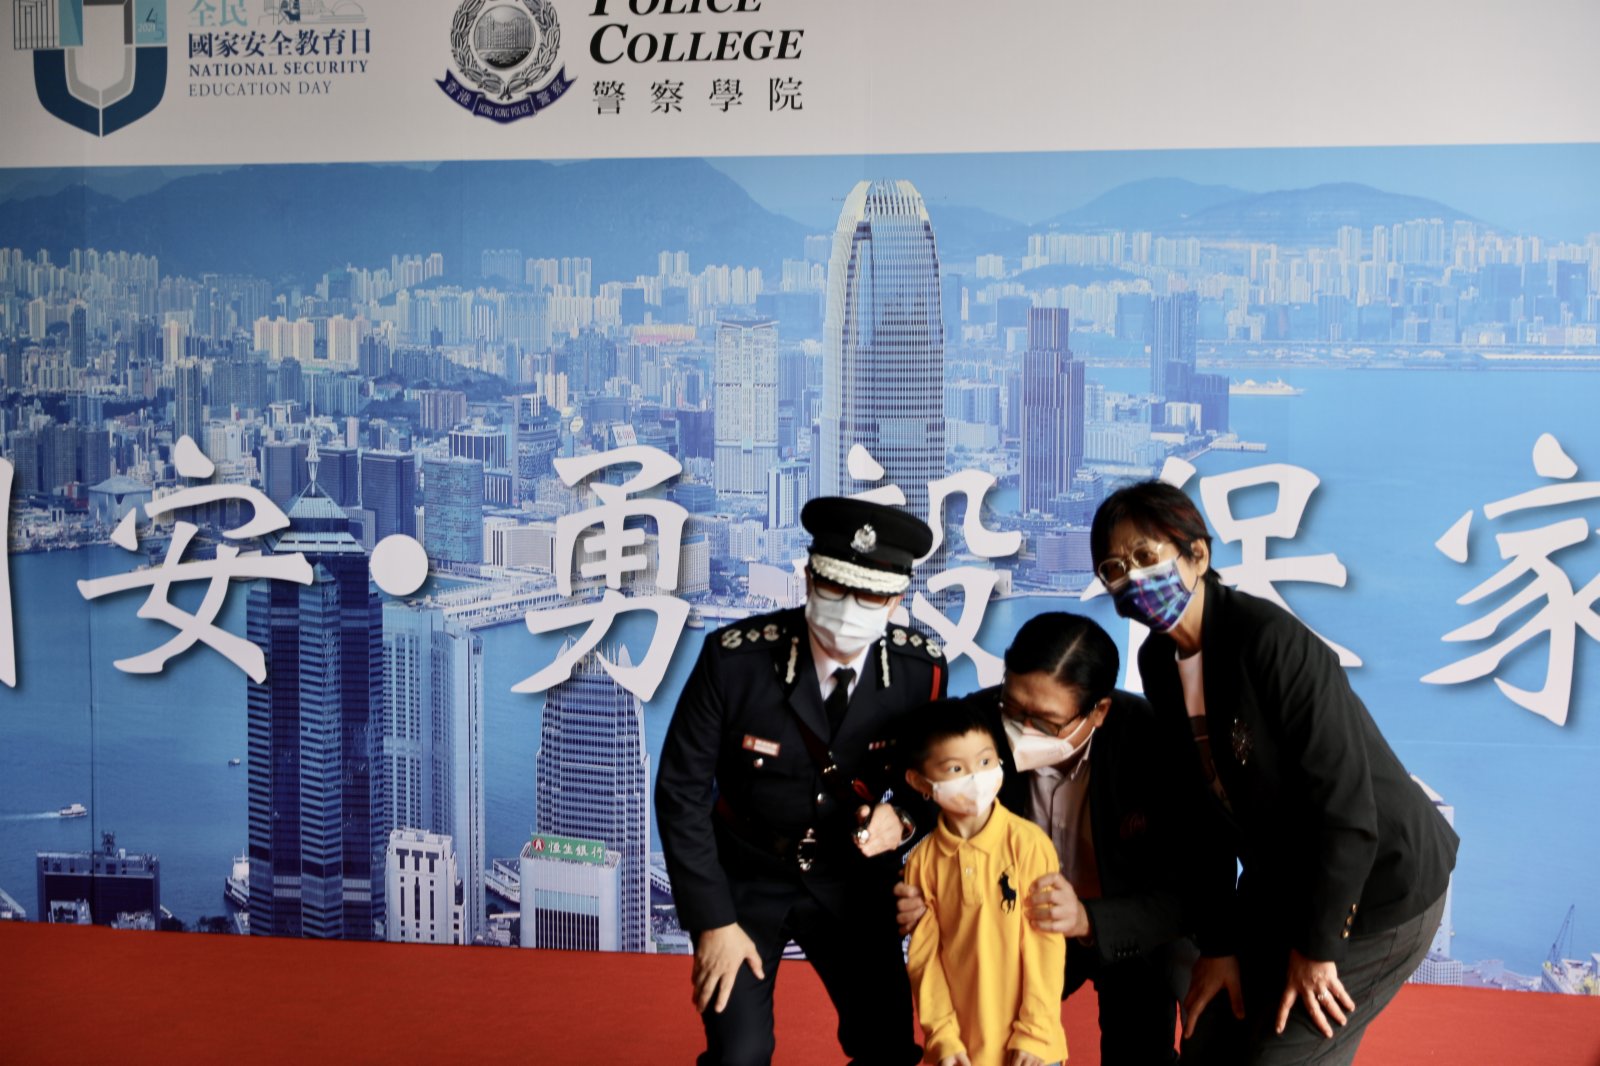 今日（15日）是實施香港國安法後第一個「全民國家安全教育日」，警察學院舉行開放日活動。警務處處長鄧炳強下午到警察學院觀看步操，又與在場市民拍照及交流，試玩國安法問答遊戲，並參觀國安法展覽。

據悉，警察學院開放日的展示項目包括專業步操表演、警察樂隊演奏、反恐演練、國家安全教育展覽、網絡安全展、特別用途車輛及裝甲車輛展示、爆炸品處理組及鐵路應變部隊與水警前線人員裝備展示及分享、衝鋒隊路障及裝備展示、虛擬實境體驗、警犬互動等。